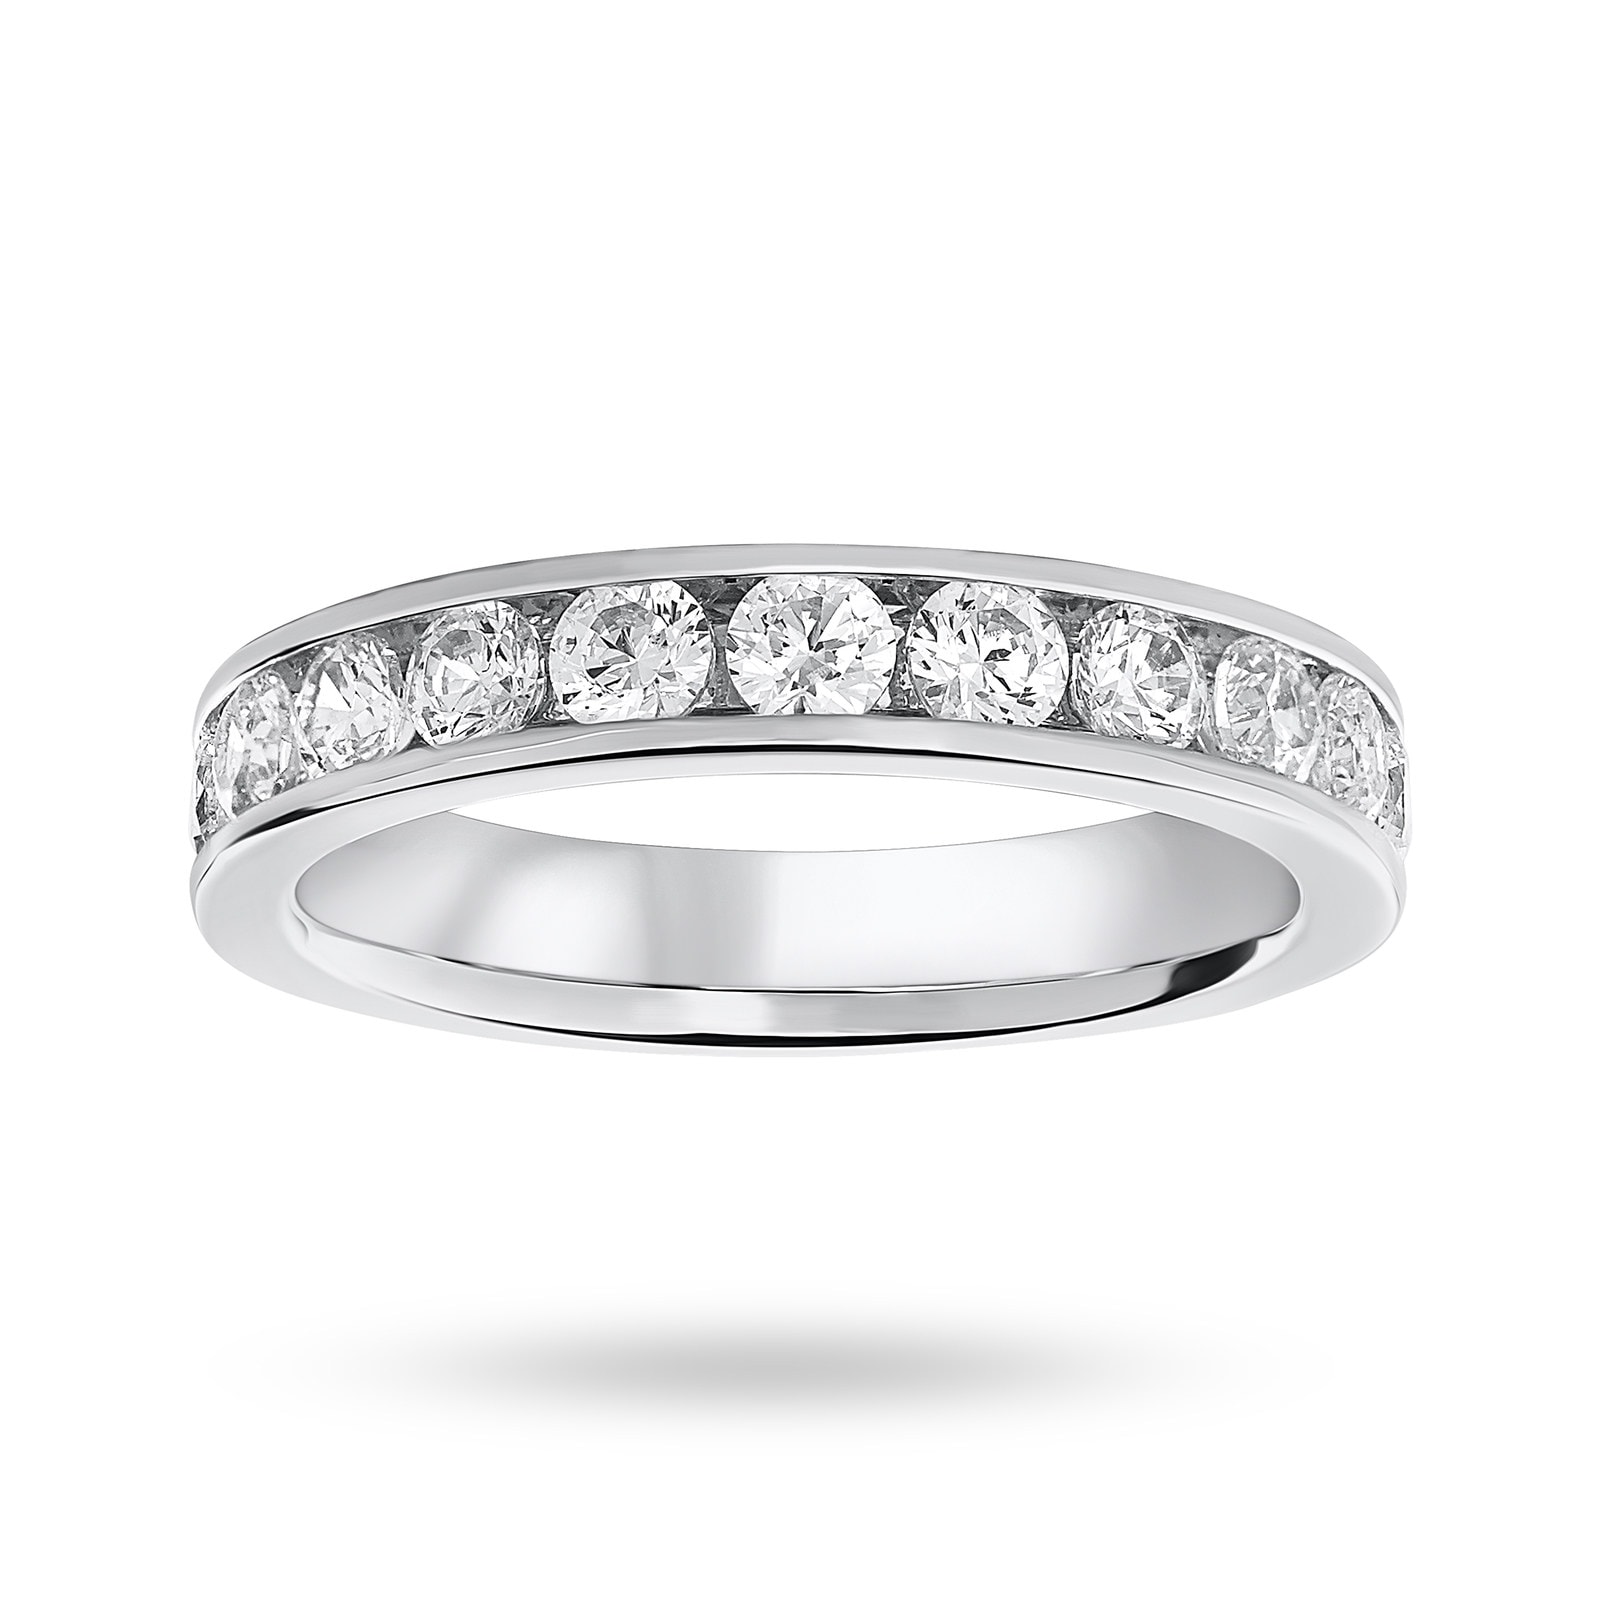 Platinum 1.00 Carat Brilliant Cut Half Eternity Ring - Ring Size K